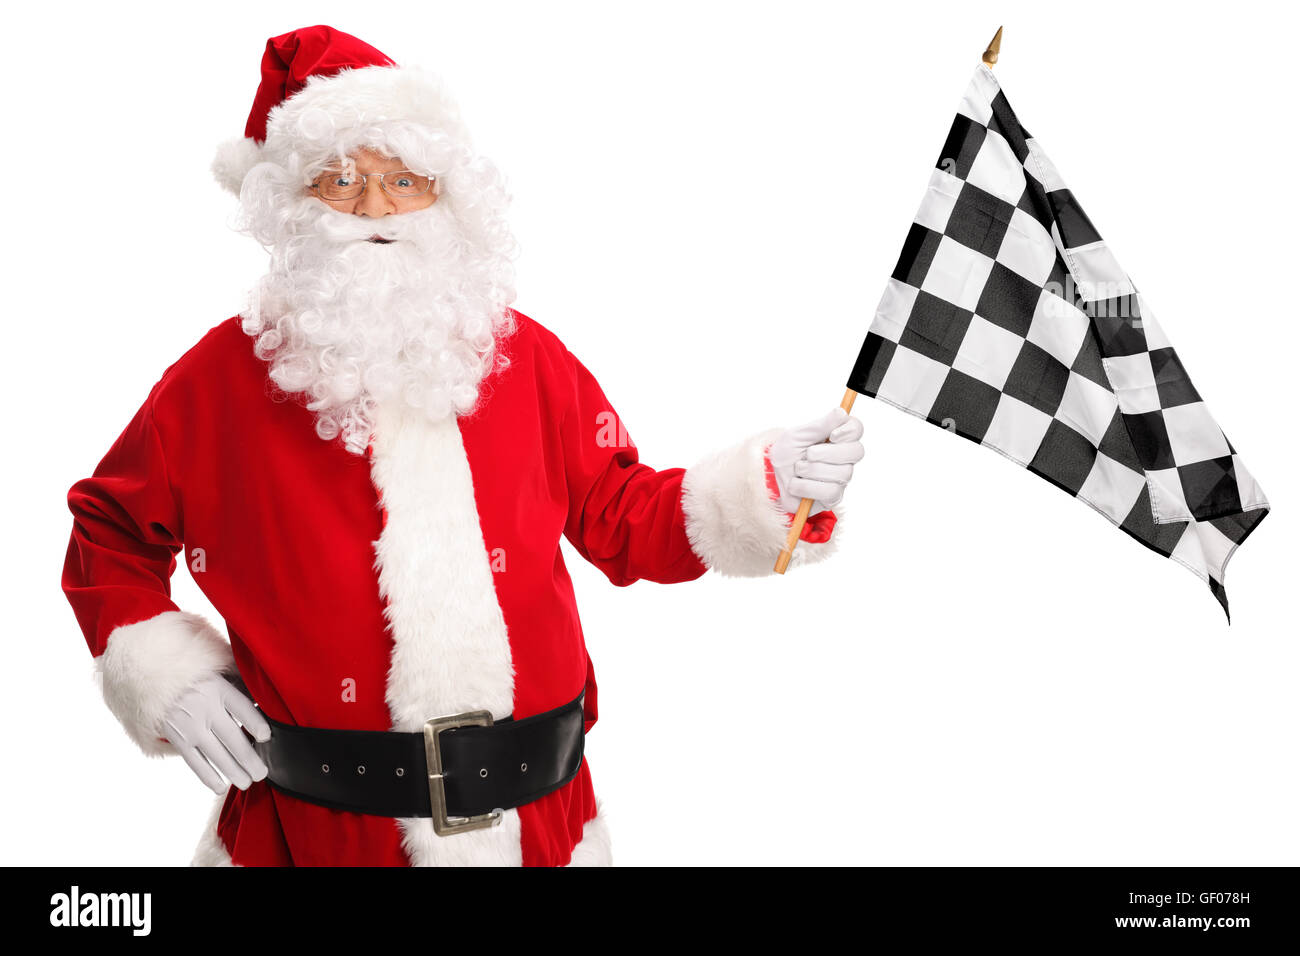 Santa Claus eine karierte Racing Flagge winken und schaut in die Kamera, die isoliert auf weißem Hintergrund Stockfoto